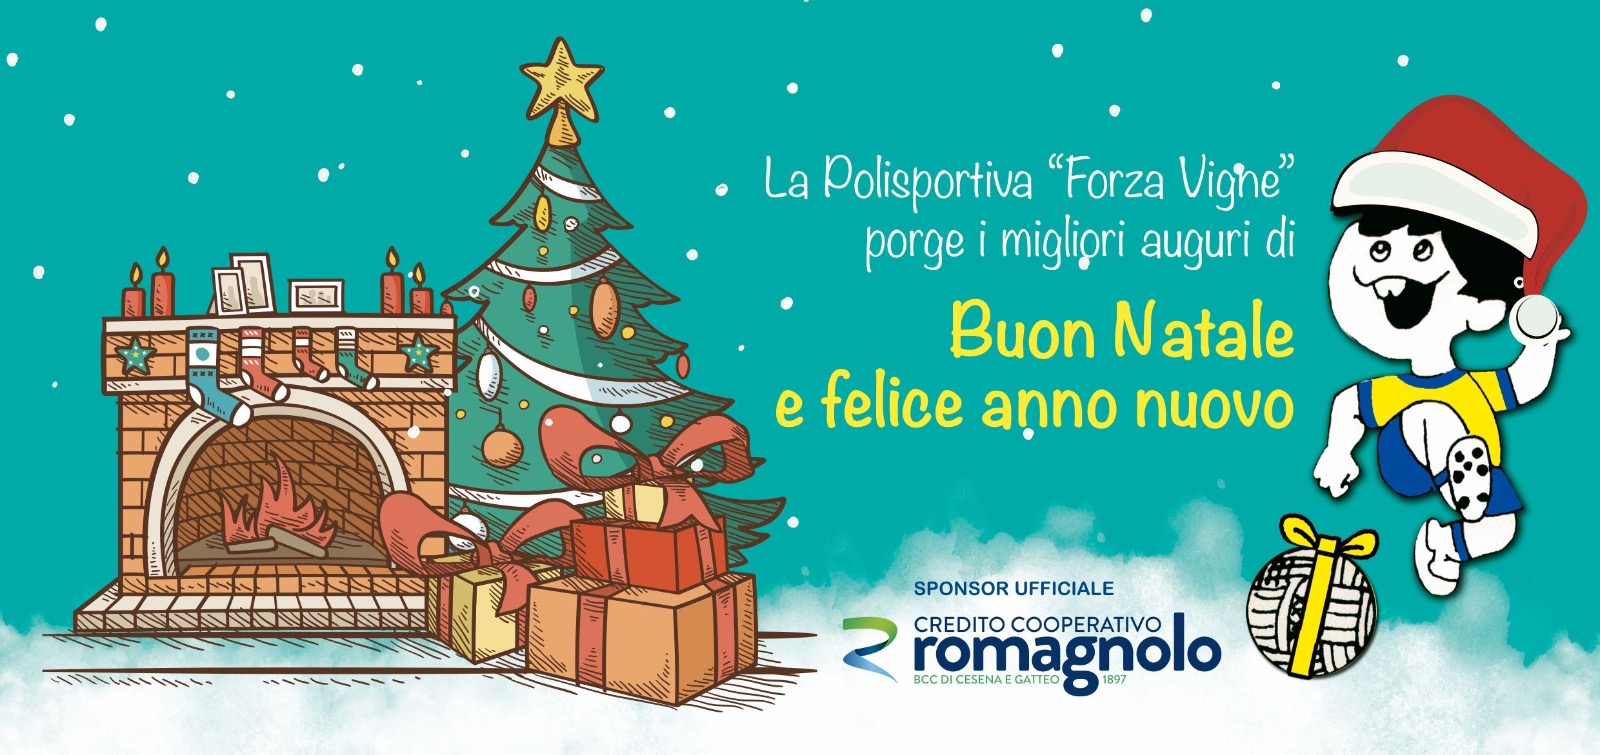 Auguri Di Buon Natale Ufficiali.Auguri Di Buon Natale E Festivita Polisportiva Forza Vigne